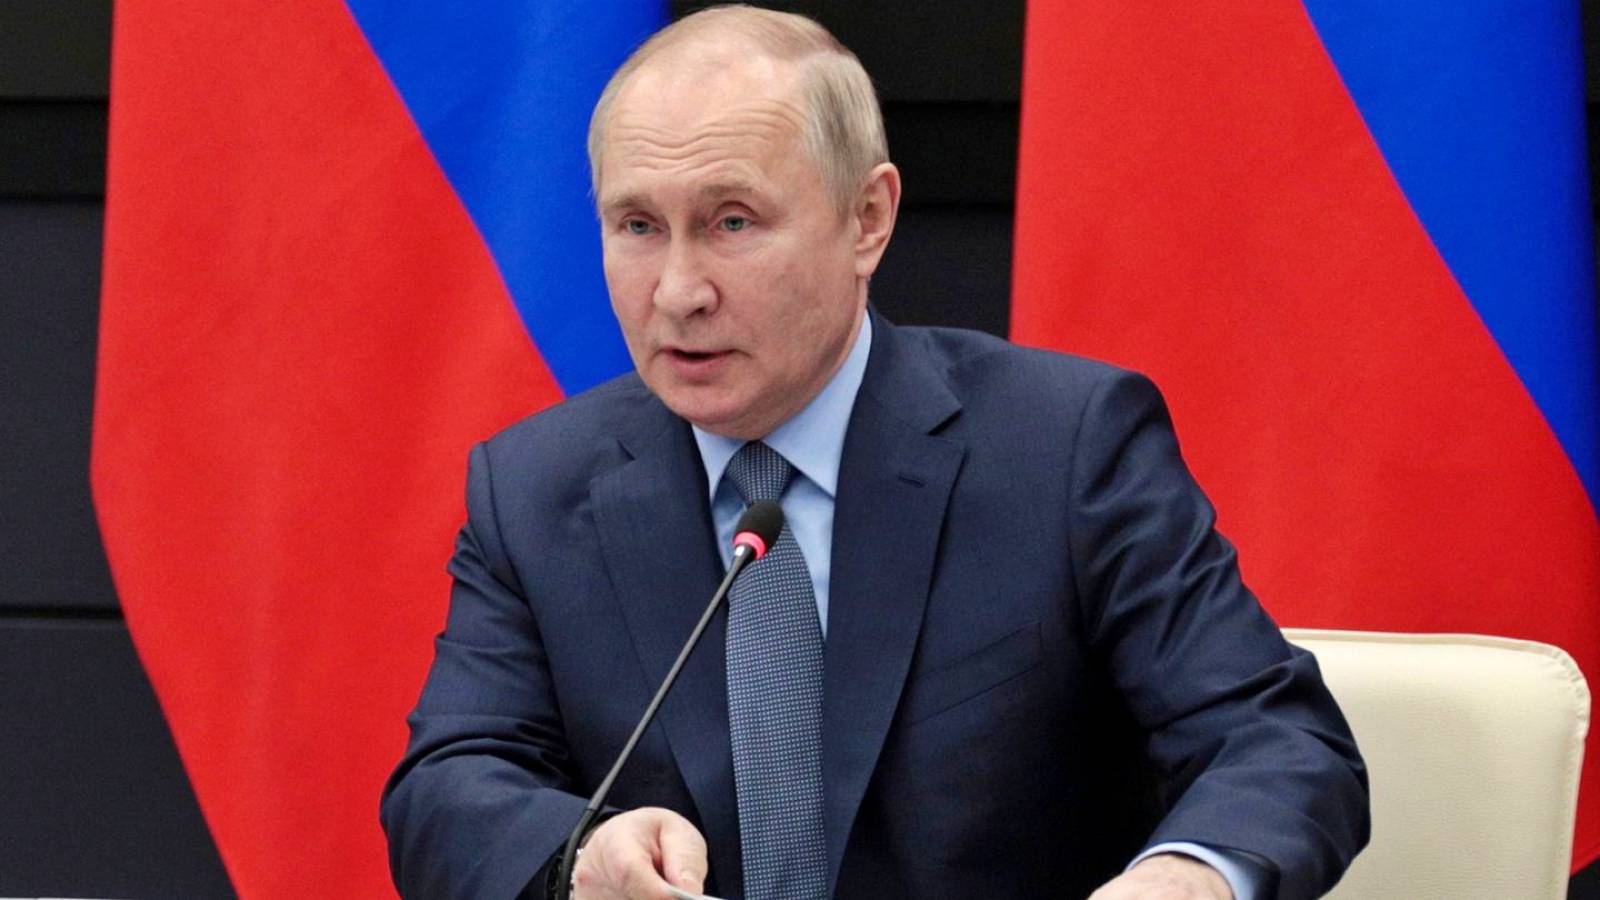 Vladimir Putin ei aio lähettää uusia värvättyjä Ukrainaan